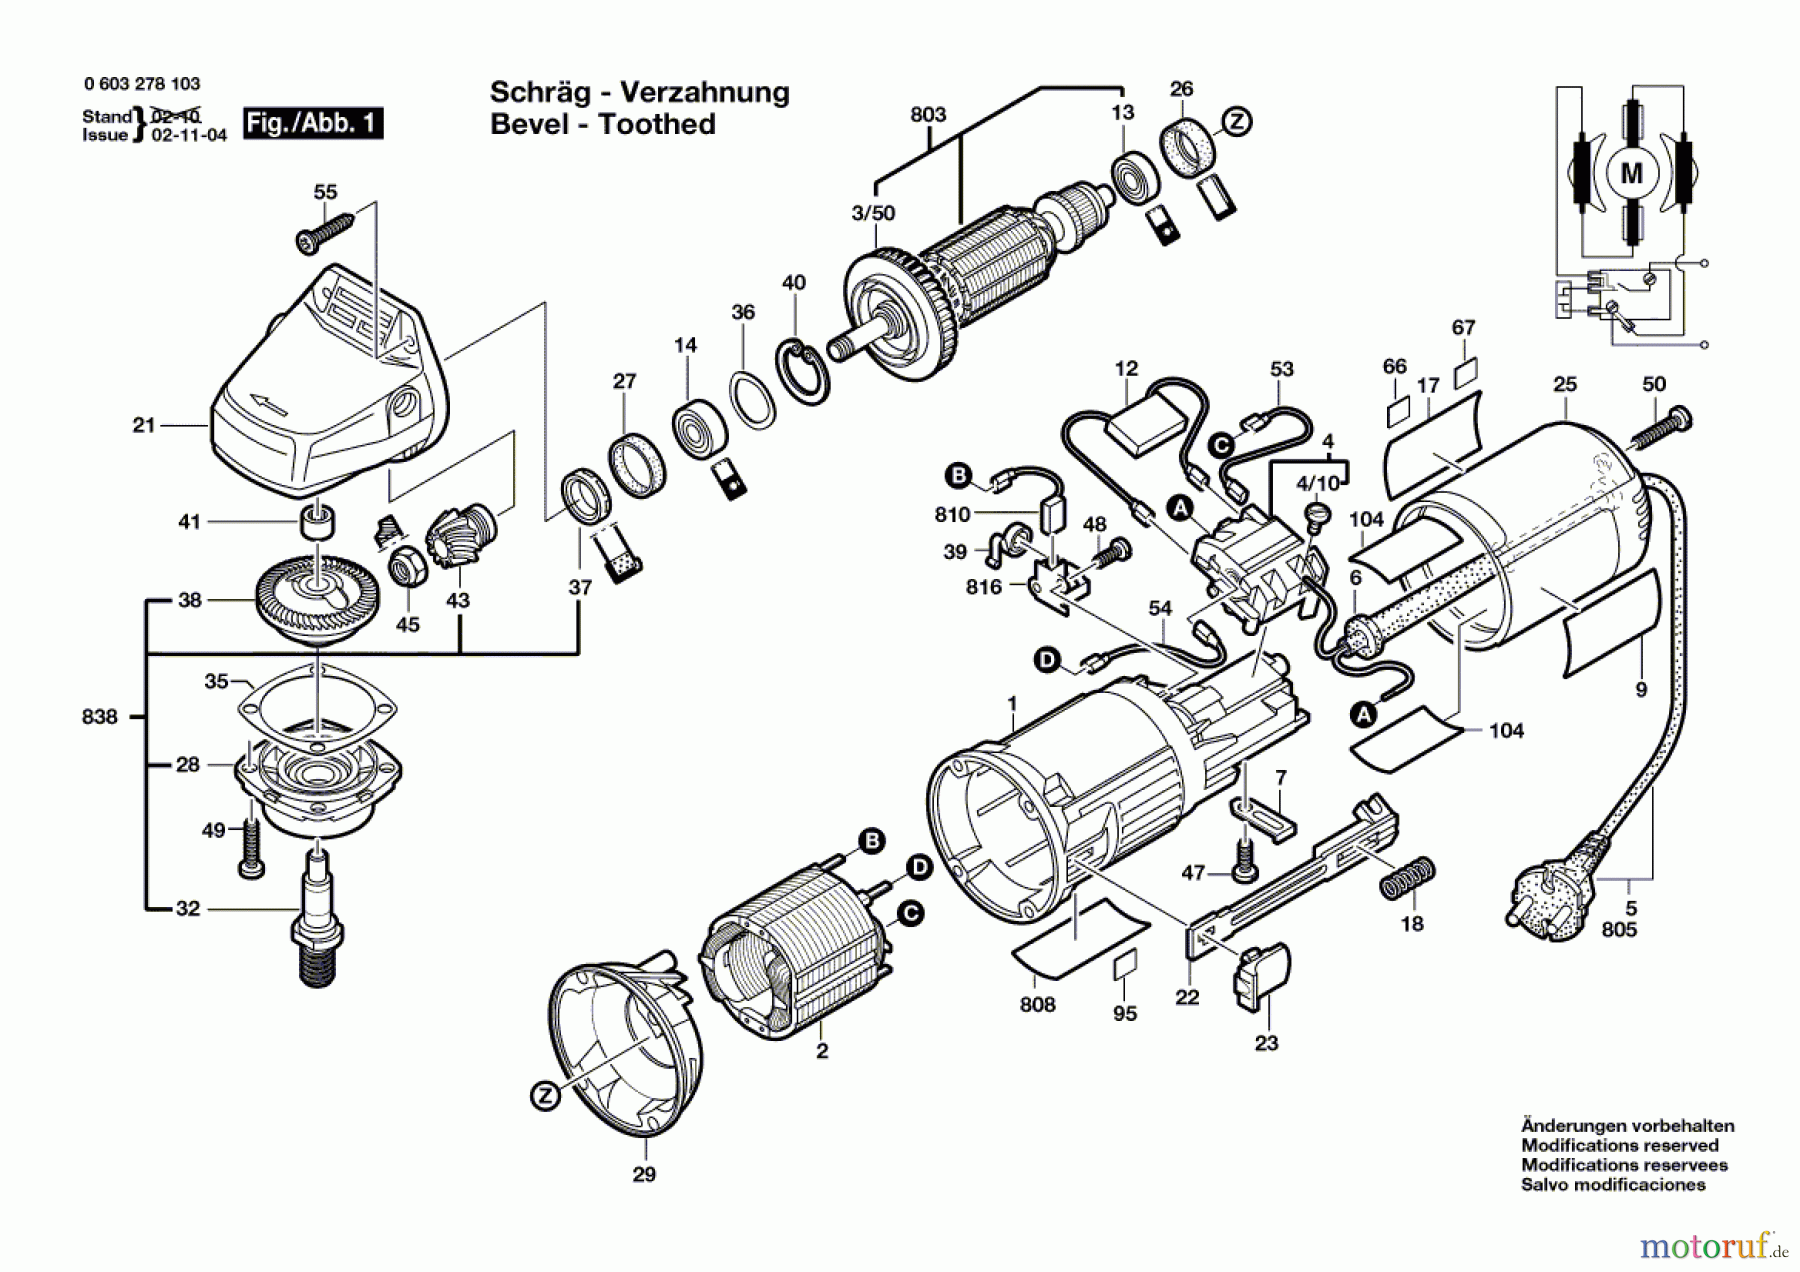  Bosch Werkzeug Winkelschleifer PWS 5-115 Seite 1